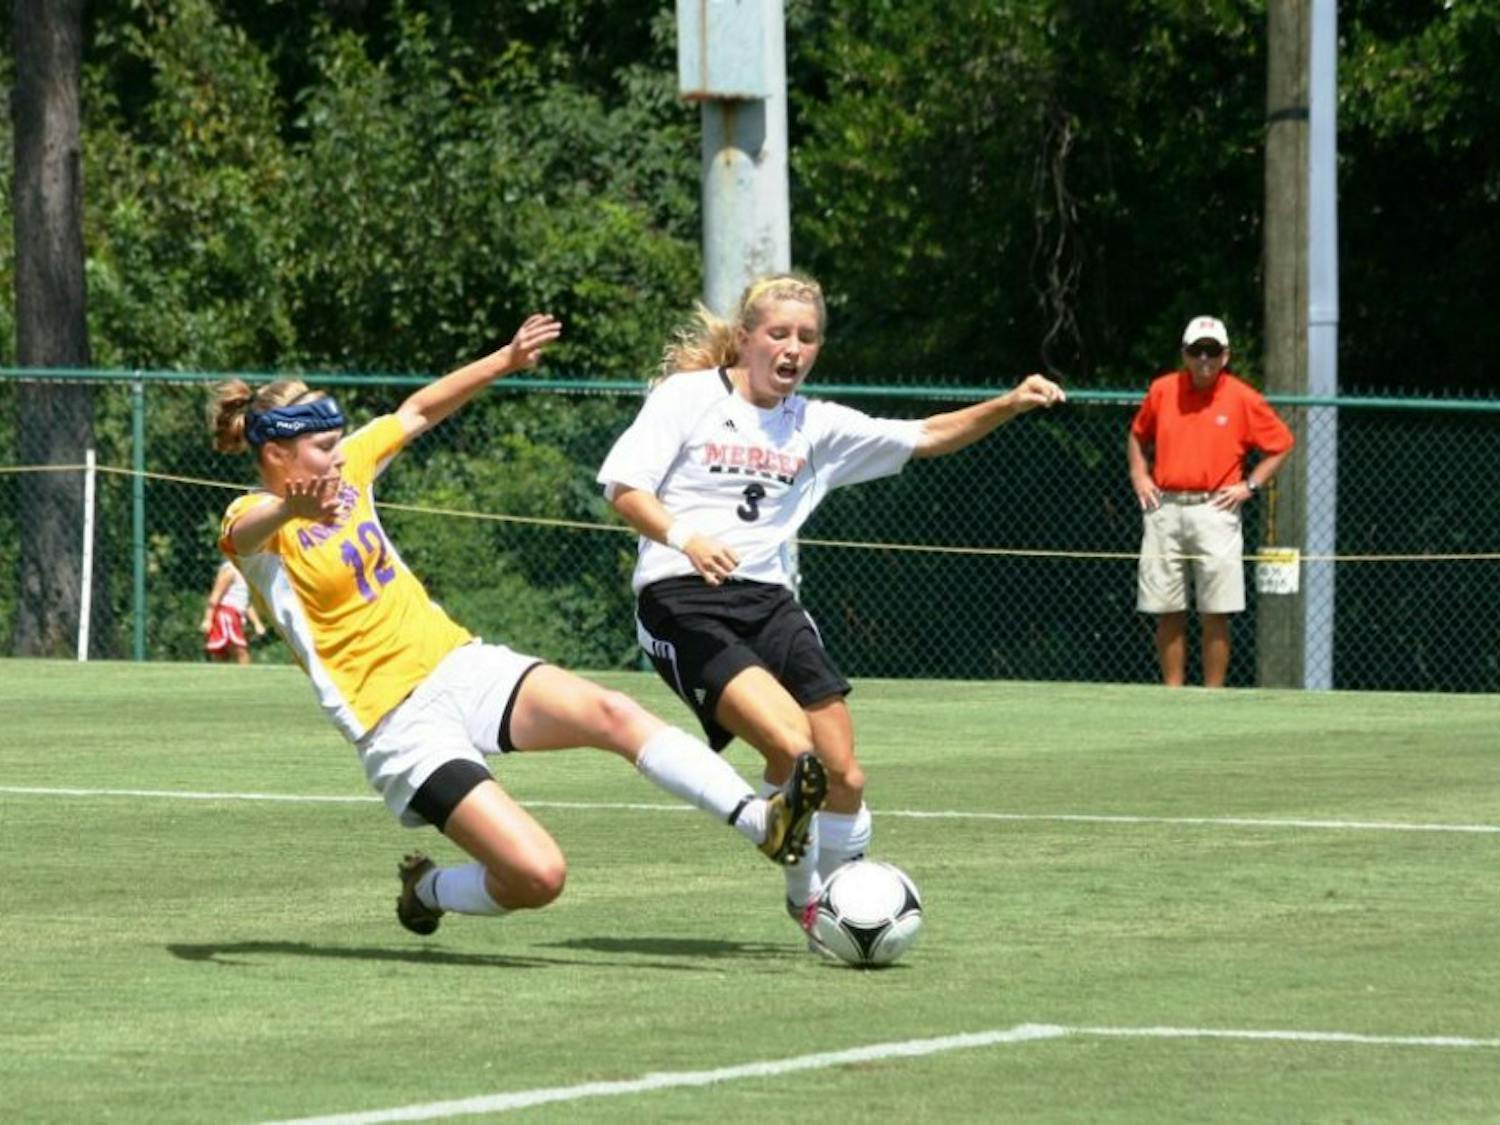 Mercer-Womens-Soccer-vs.-Alcorn-State-9.9.12-073